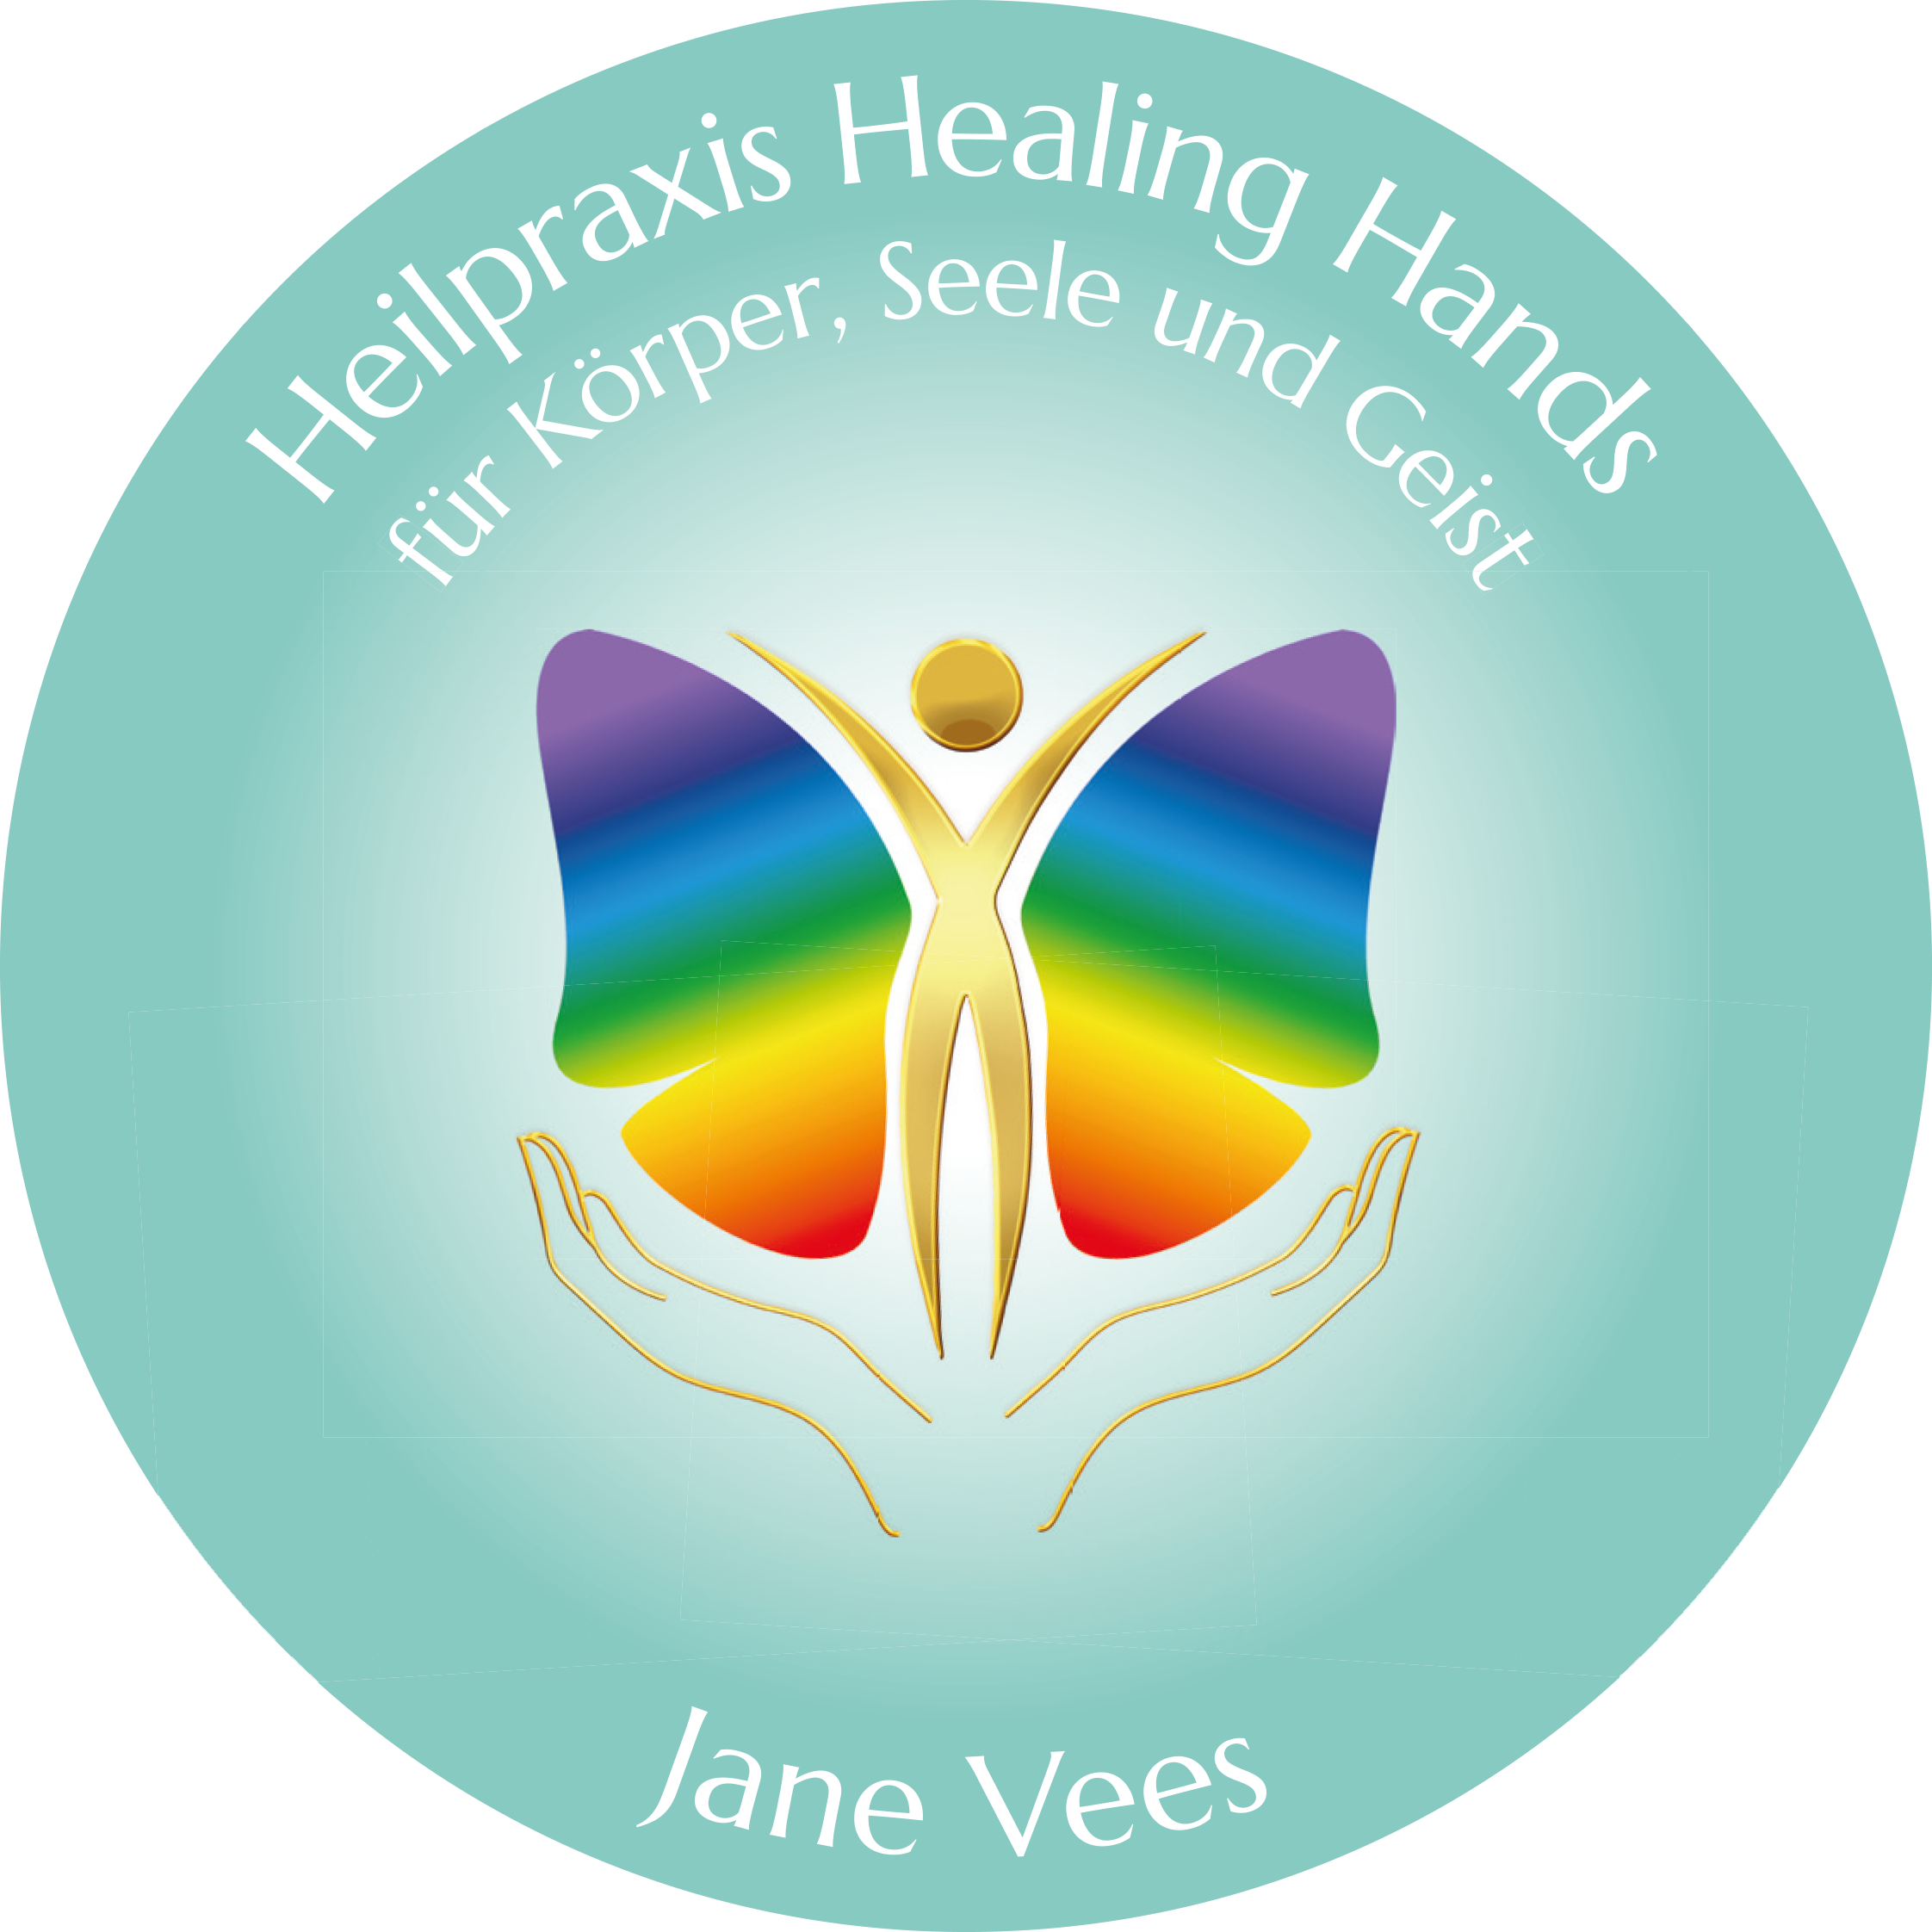 Heilpraxis Healing Hands